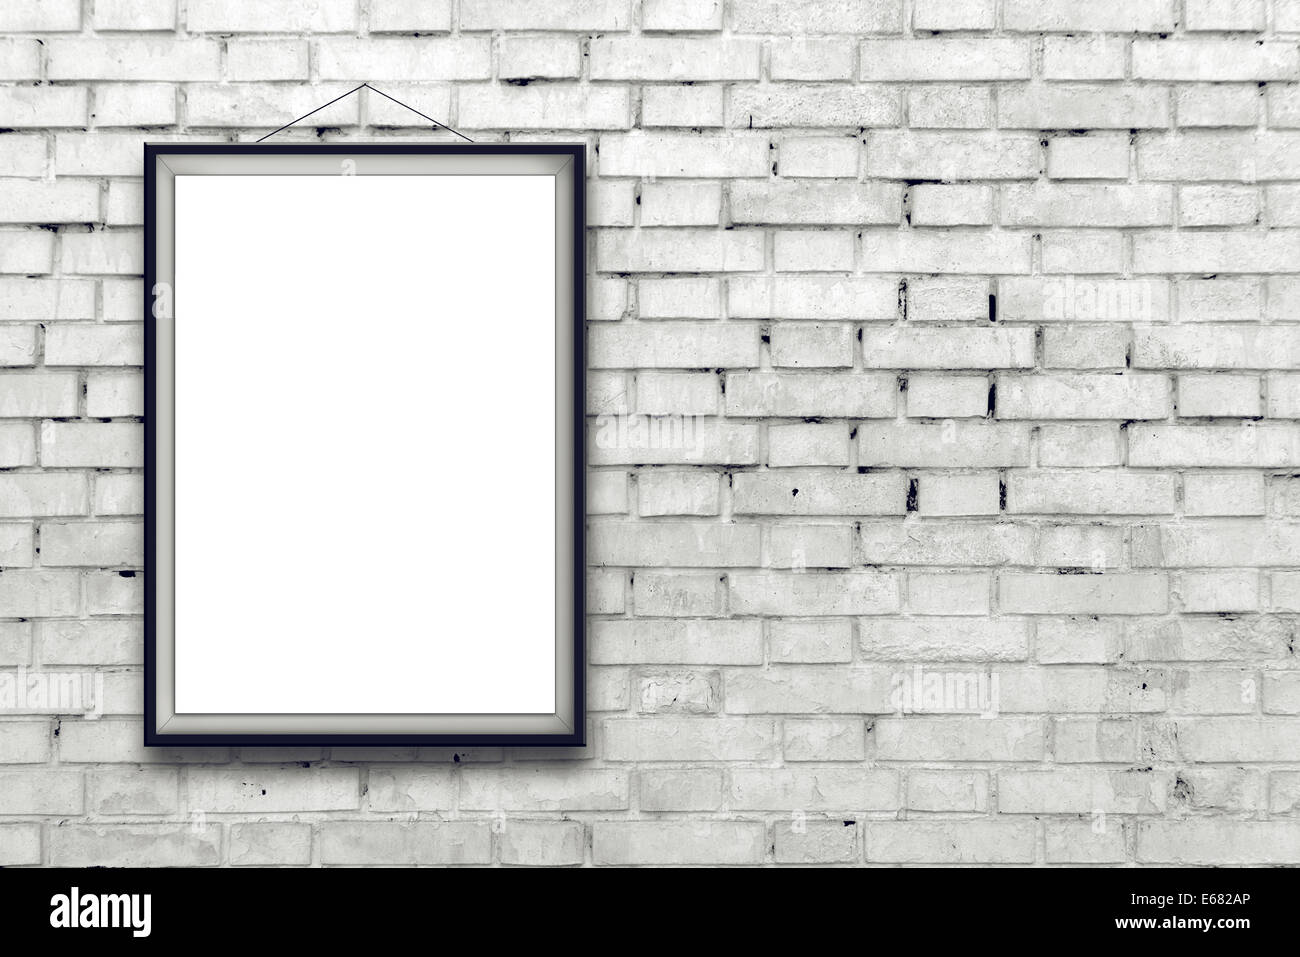 Leere vertikale Malerei Poster in schwarzen Rahmen hängen weiße Mauer. Malerei-Proportionen entsprechen internationalen Papier Größe A Stockfoto